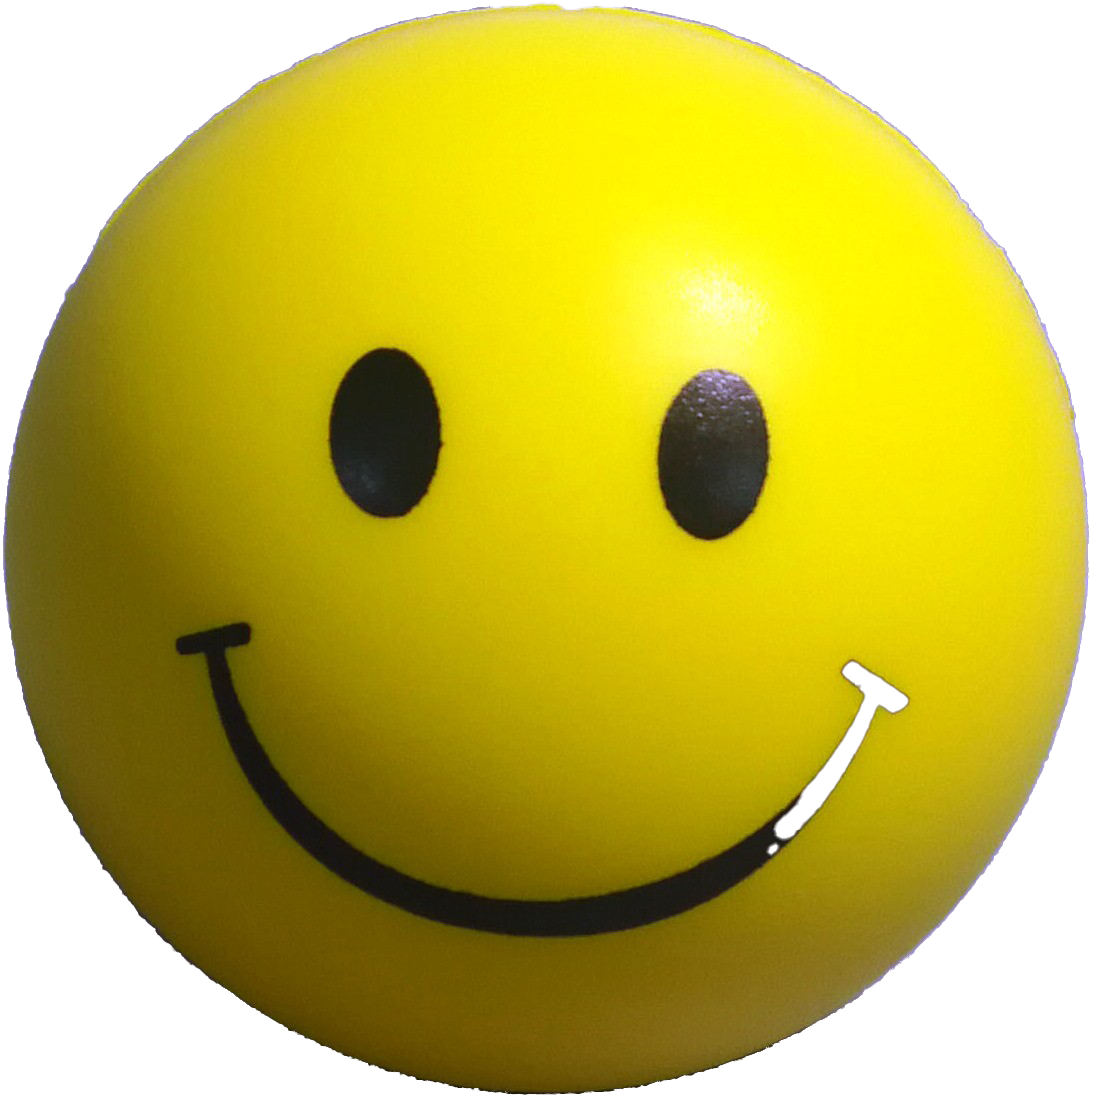 A Yellow Smiley Face Ball